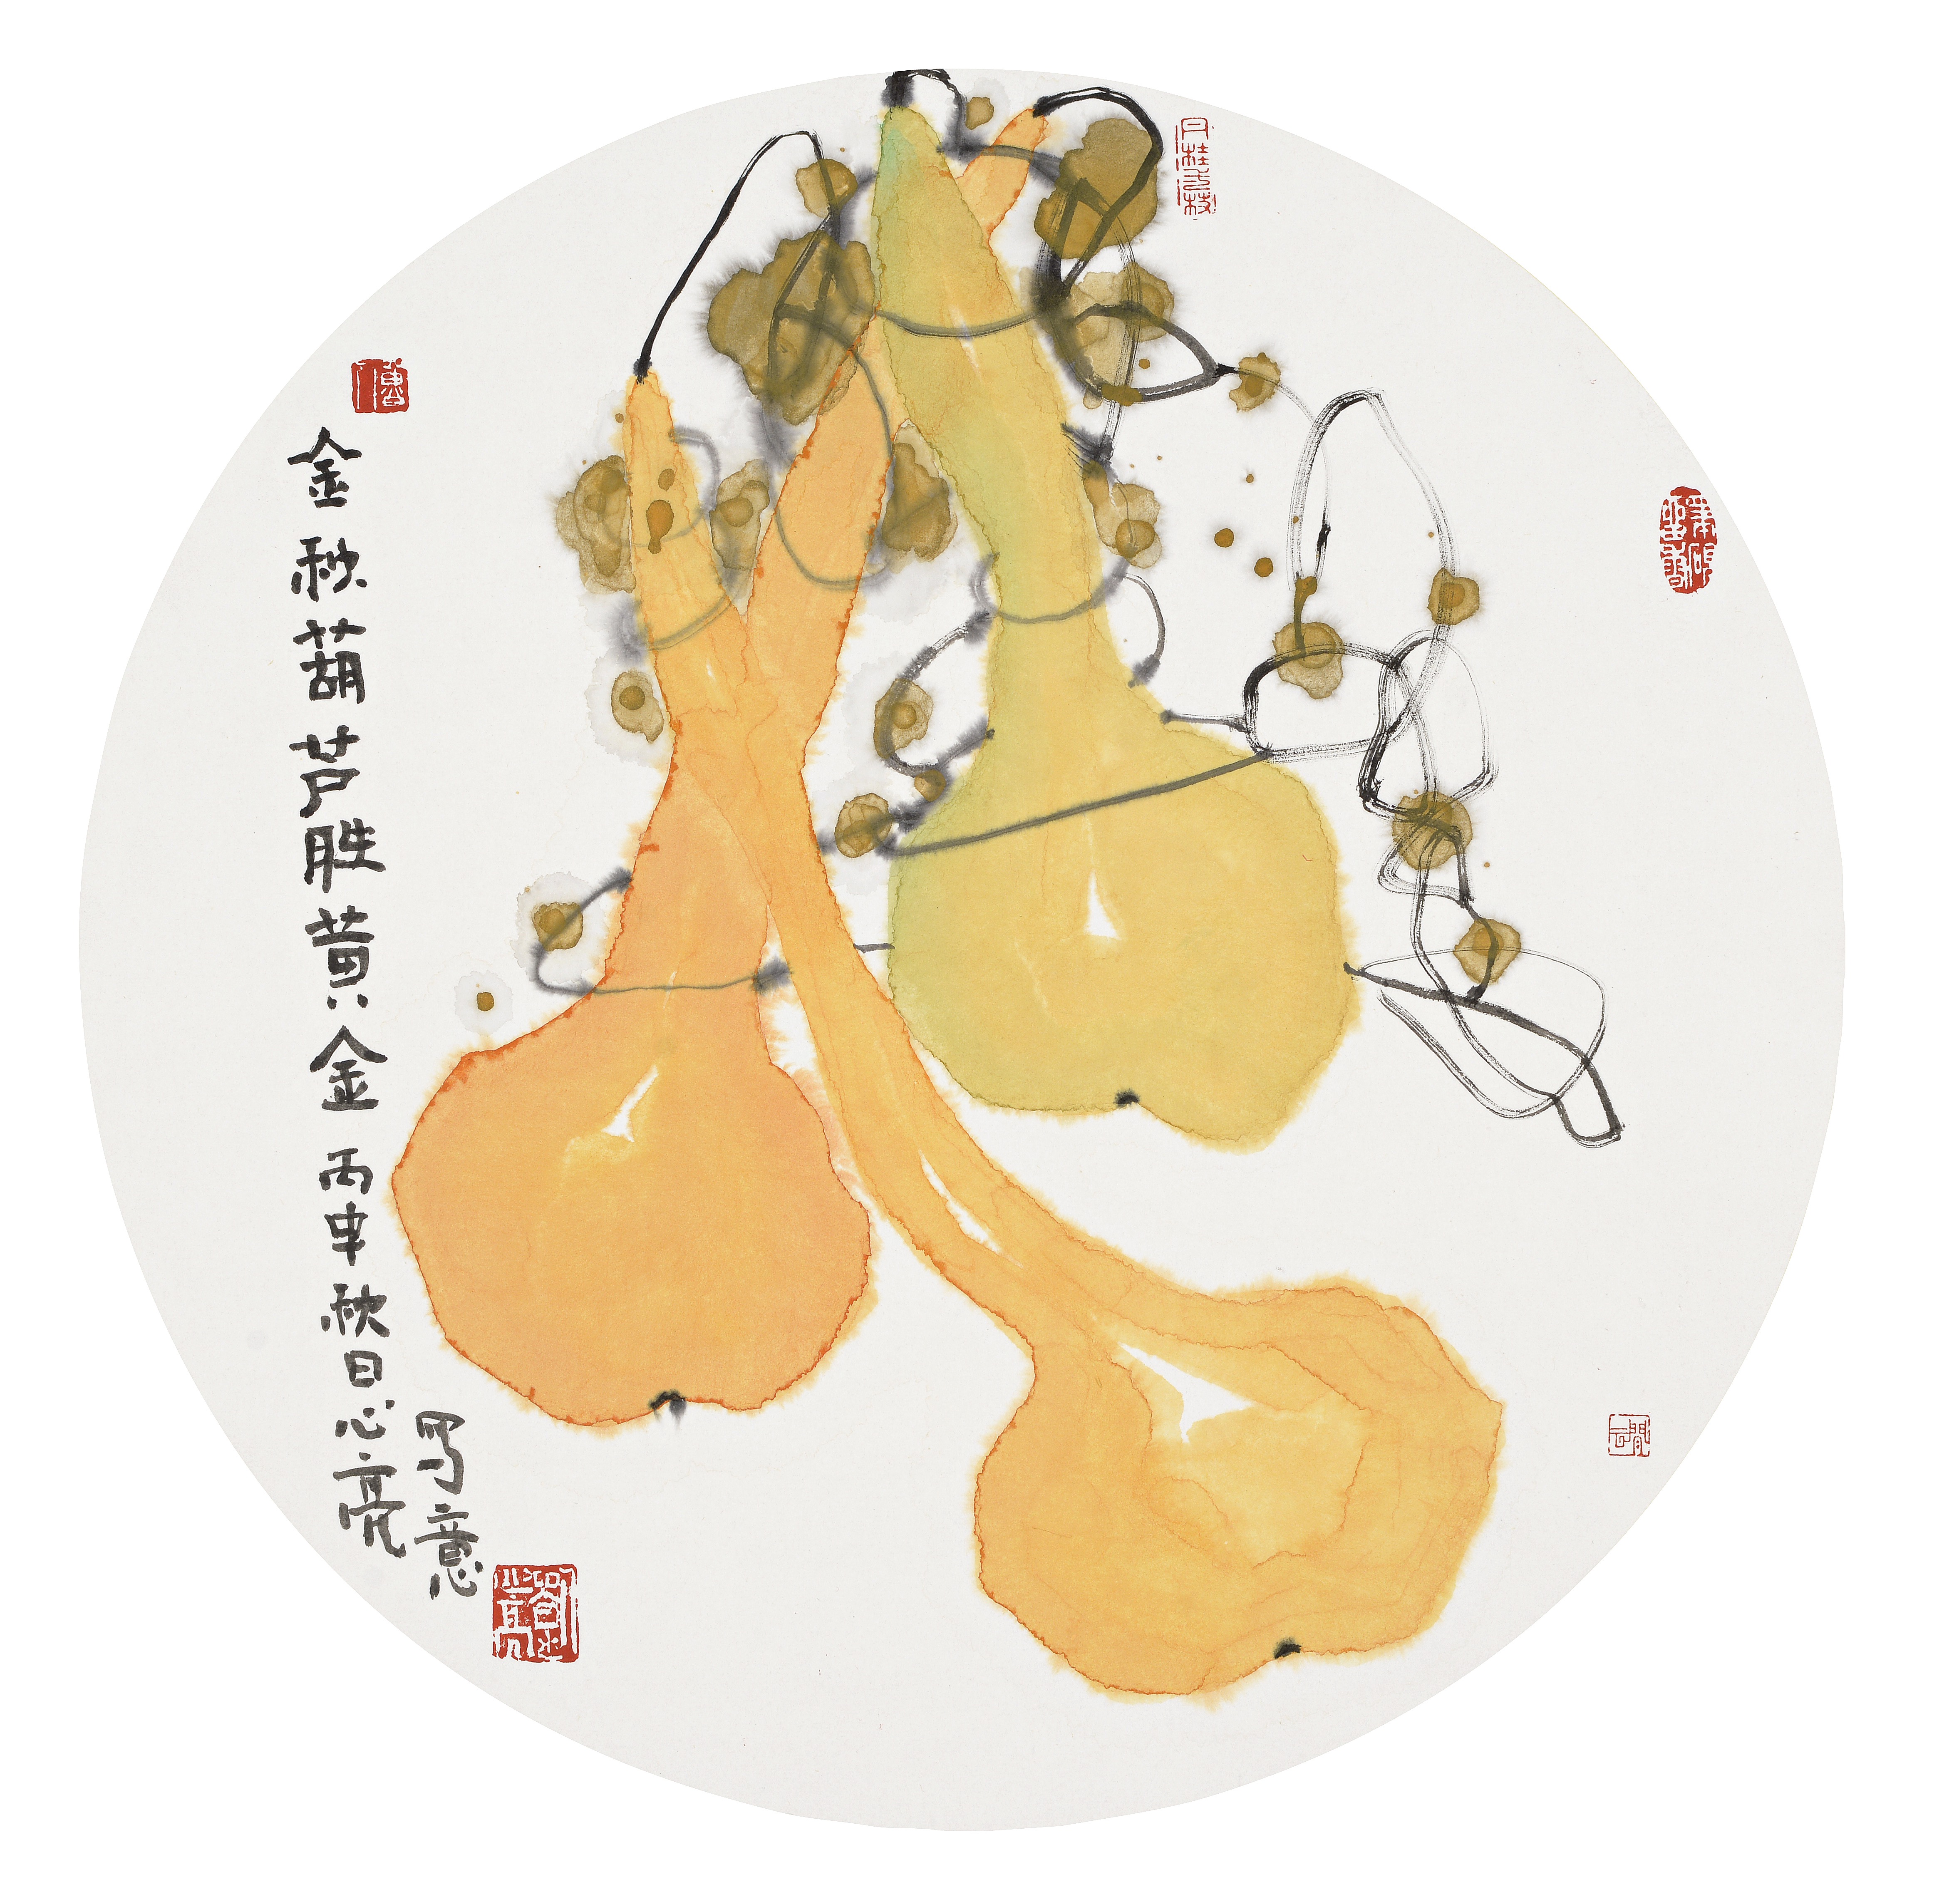 金秋葫芦胜黄金福禄满园图夏翠图葫芦,谐音福禄,是中华民俗吉祥文化的